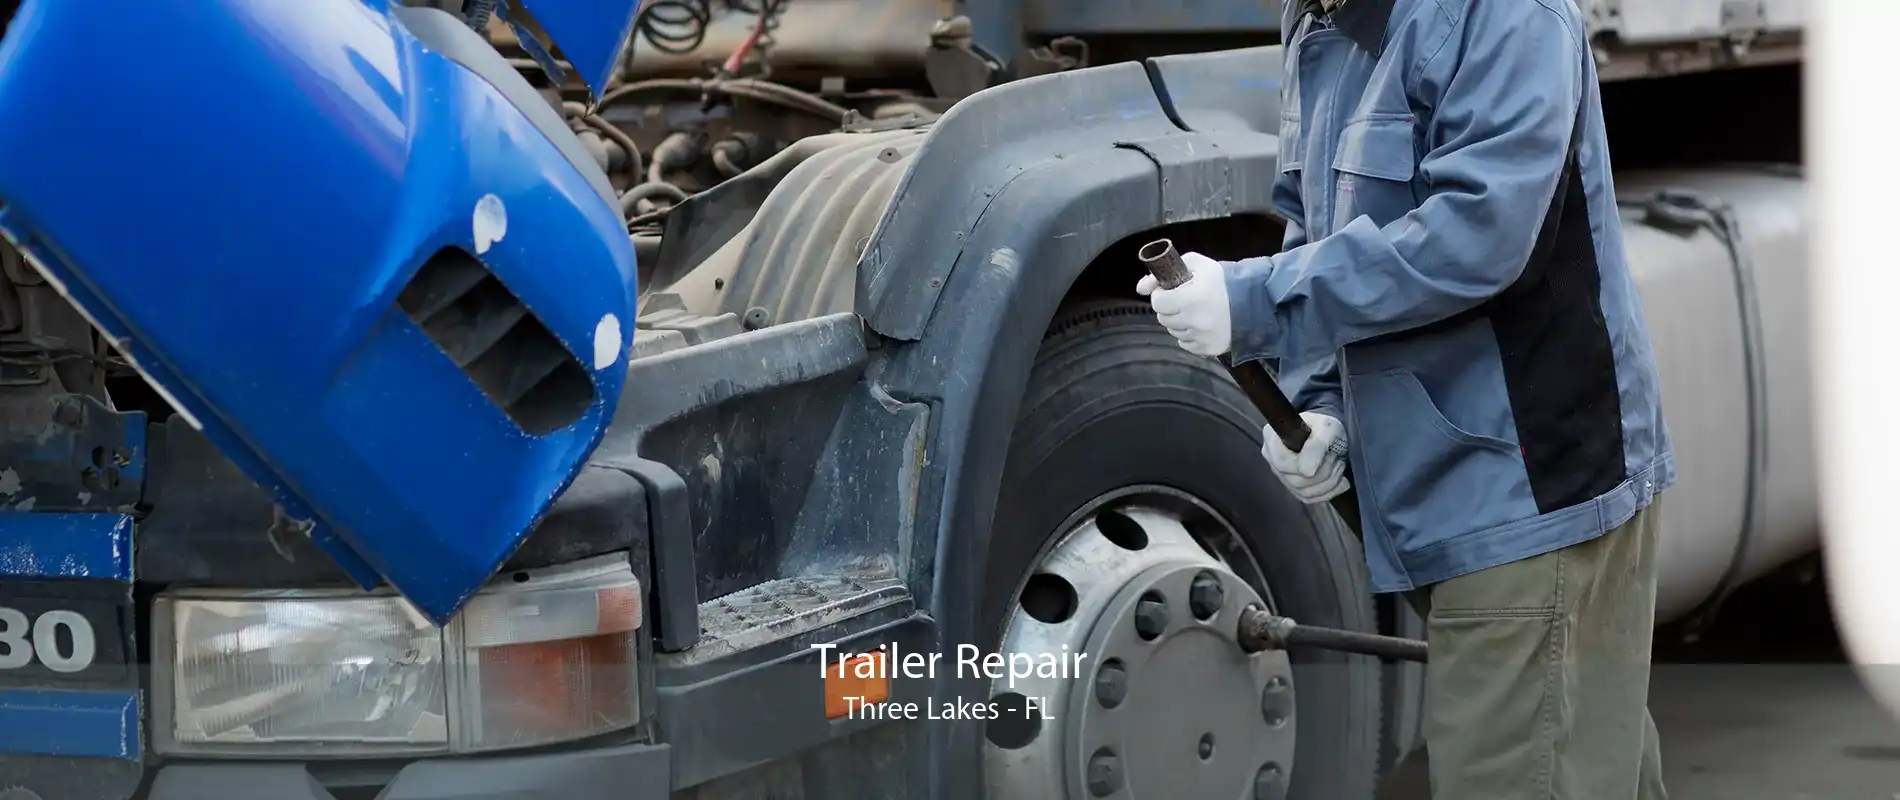 Trailer Repair Three Lakes - FL